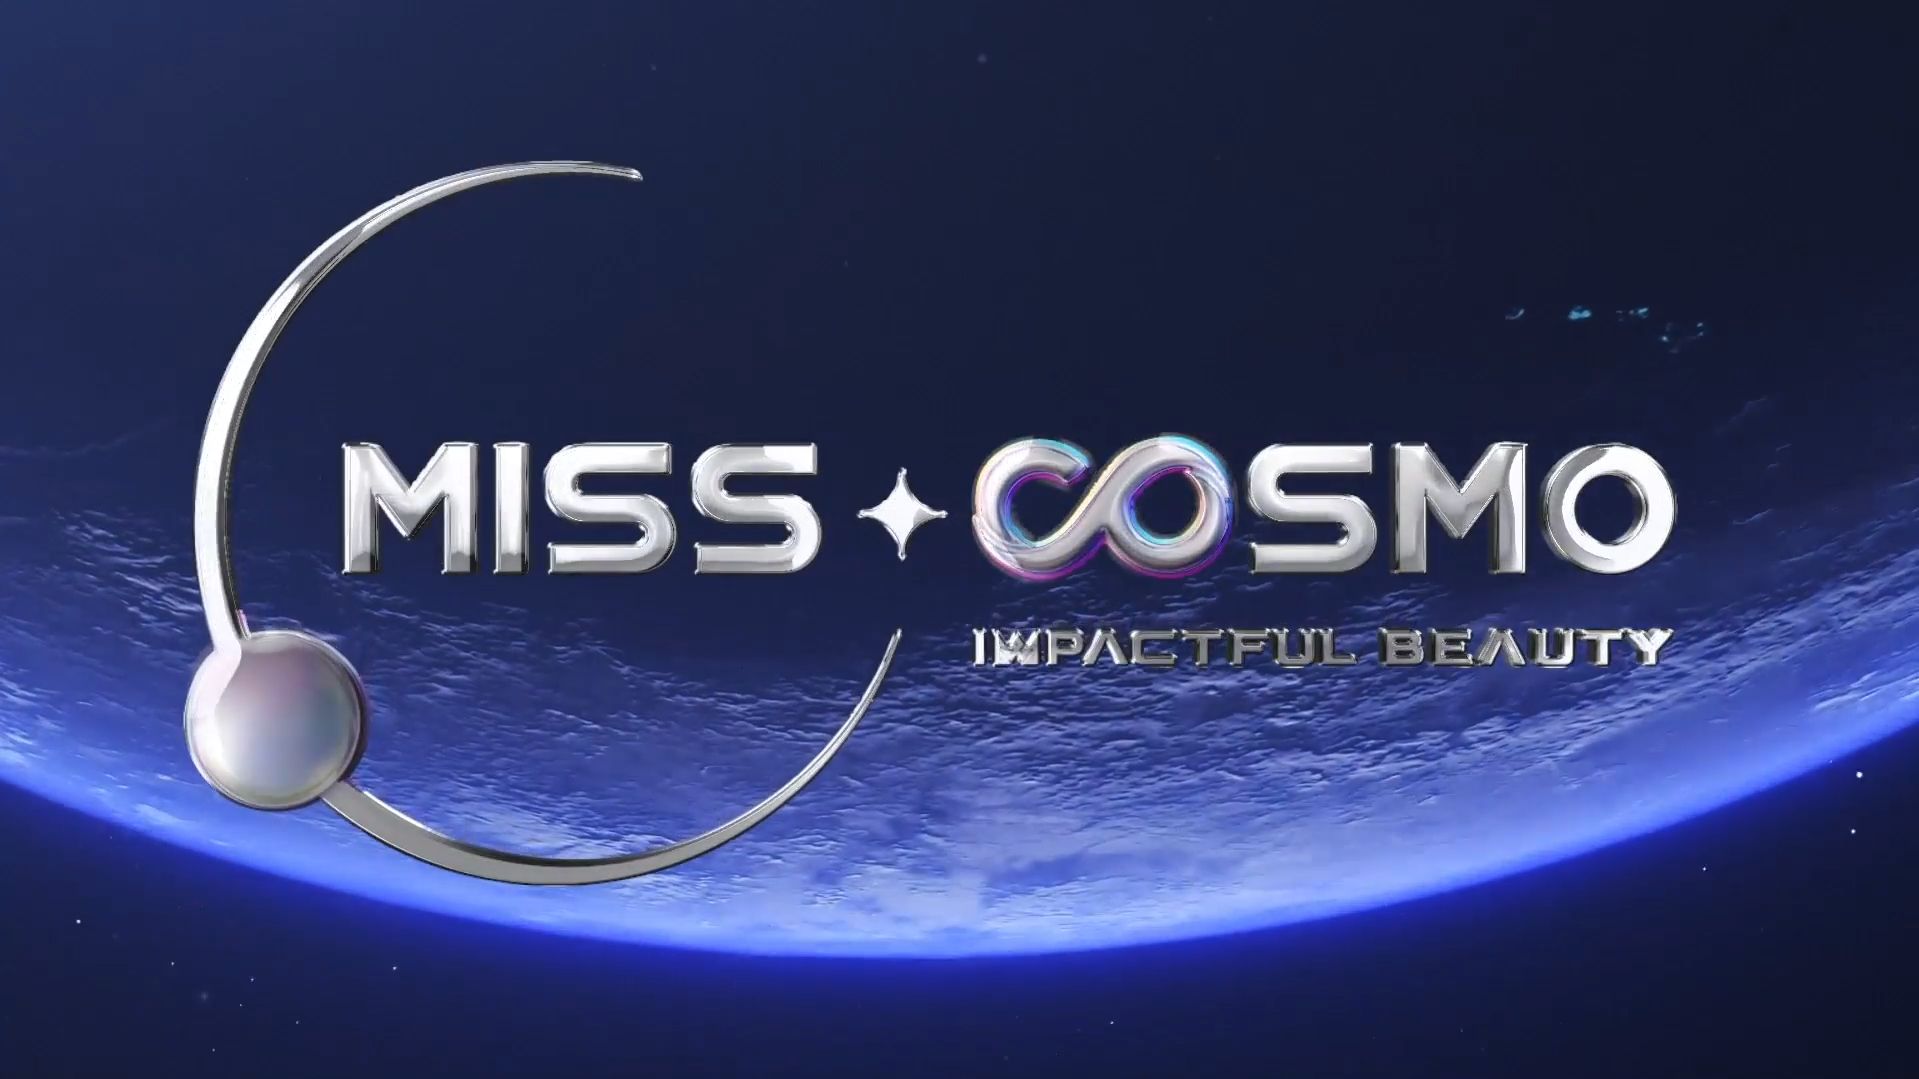 Unimedia chính thức công bố cuộc thi sắc đẹp quốc tế Miss Cosmo - Hoa hậu Hoàn vũ Quốc tế - 2